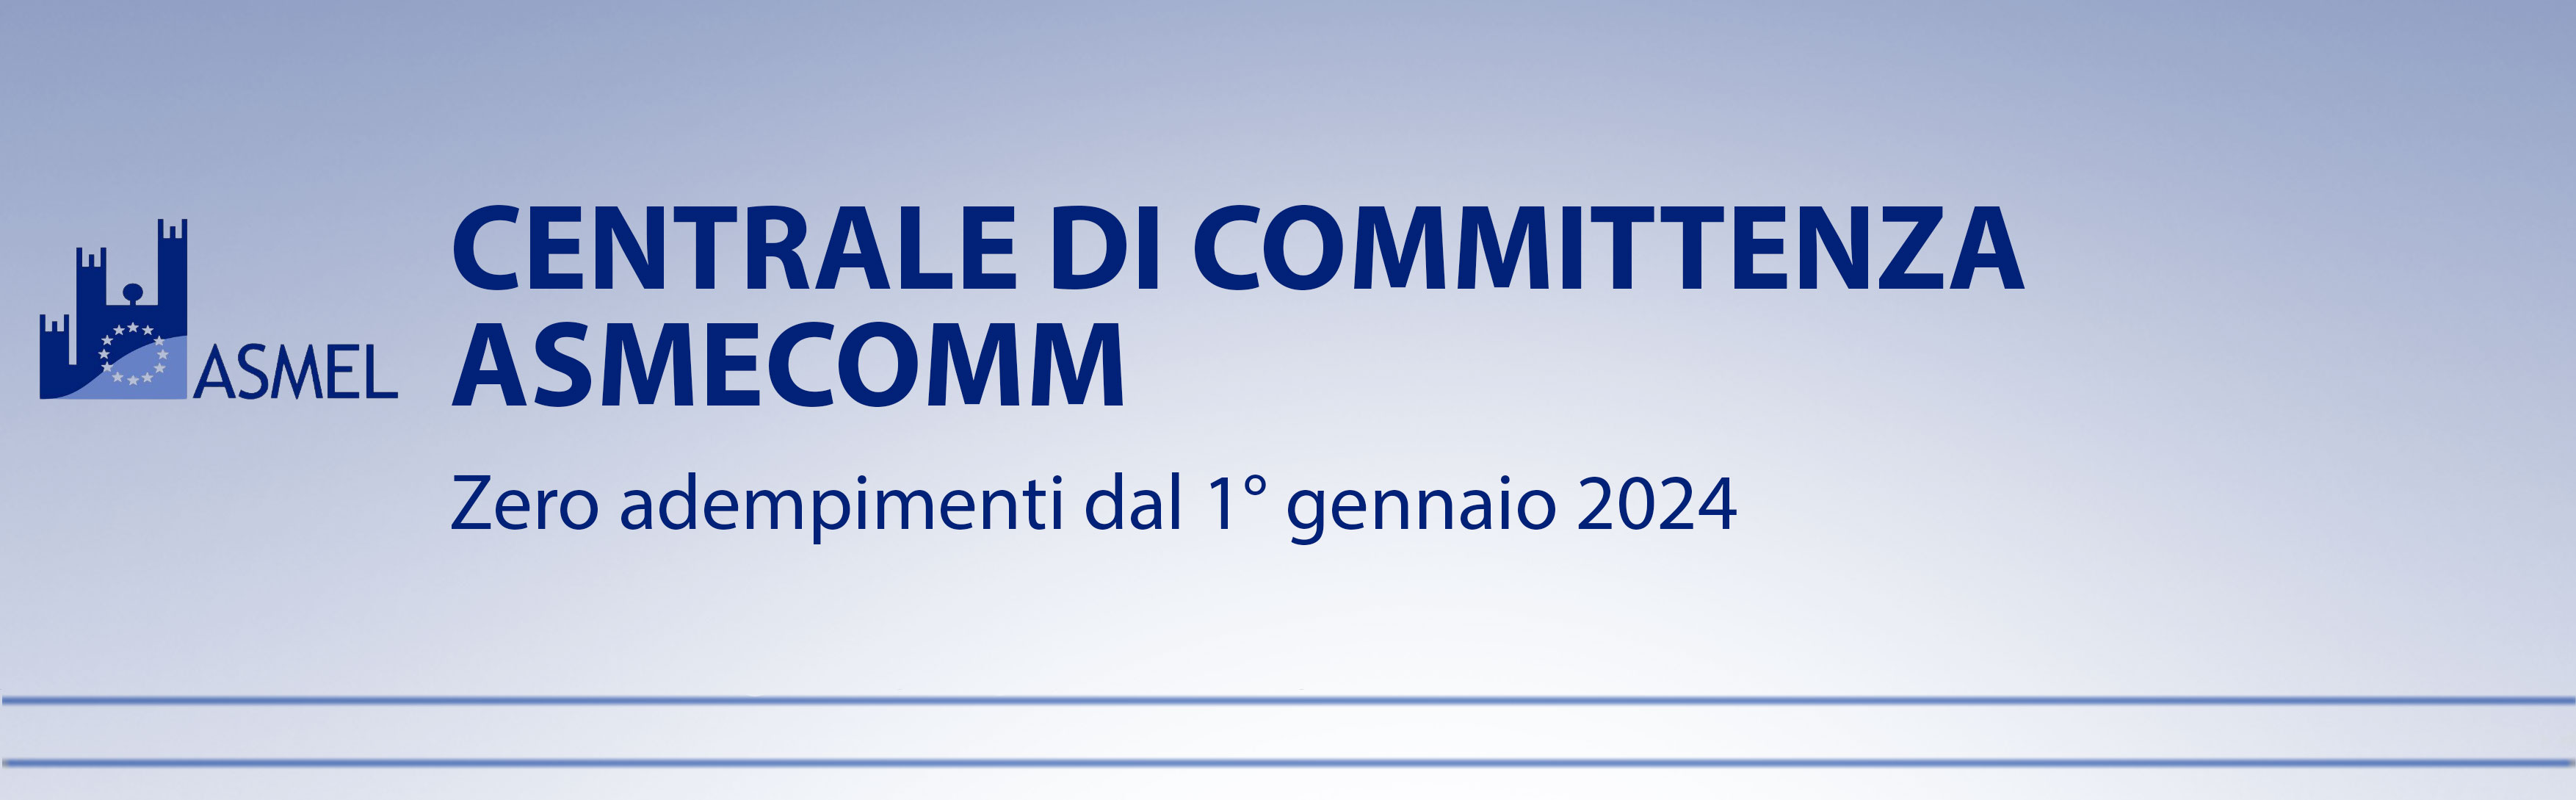 CENTRALE DI COMMITTENZA ASMECOMM ZERO ADEMPIMENTI DAL 1° GENNAIO 2024